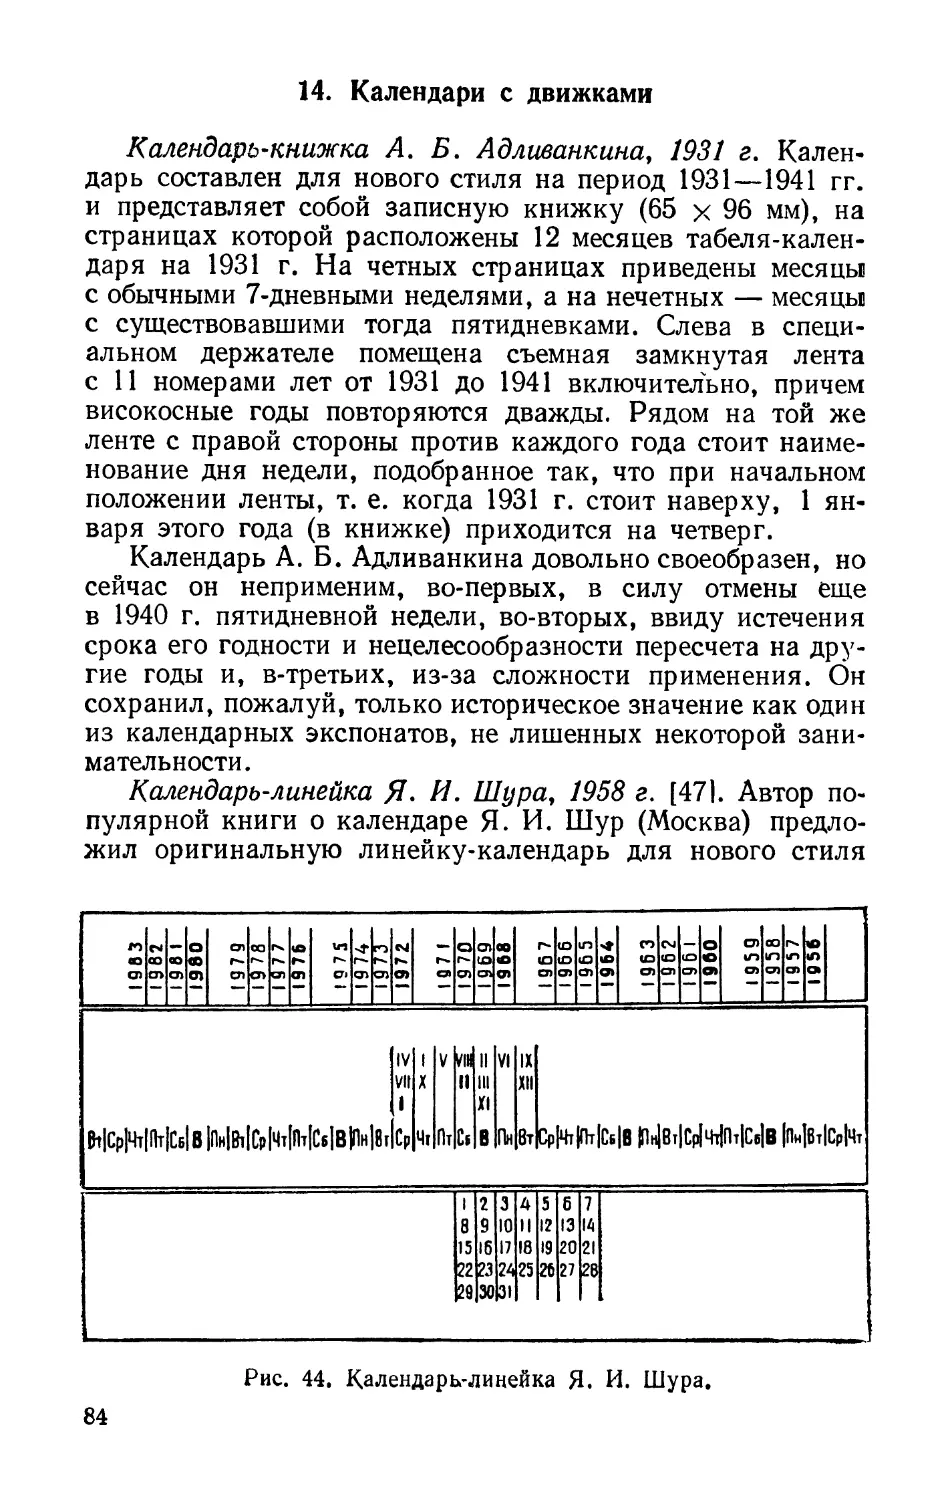 14. Календари с движками
Календарь-линейка Я. И. Шура, 1958 г.